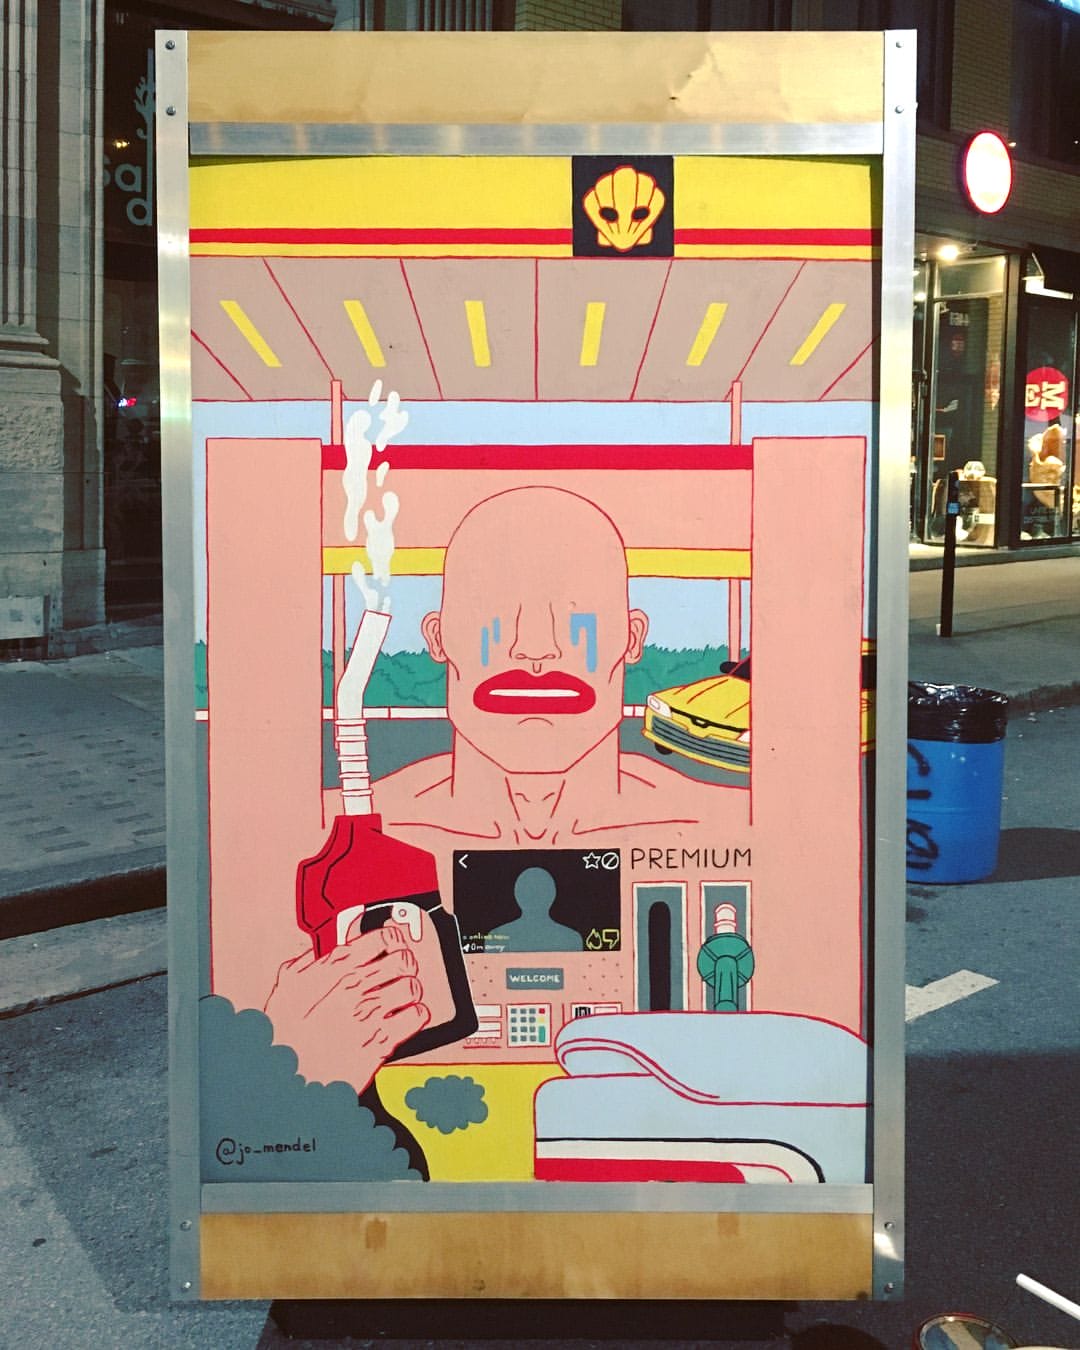 Photographie de l'illustration de Jo Mendel : décor d'un distributeur d'essence sur lequel un homme sans yeux pleure